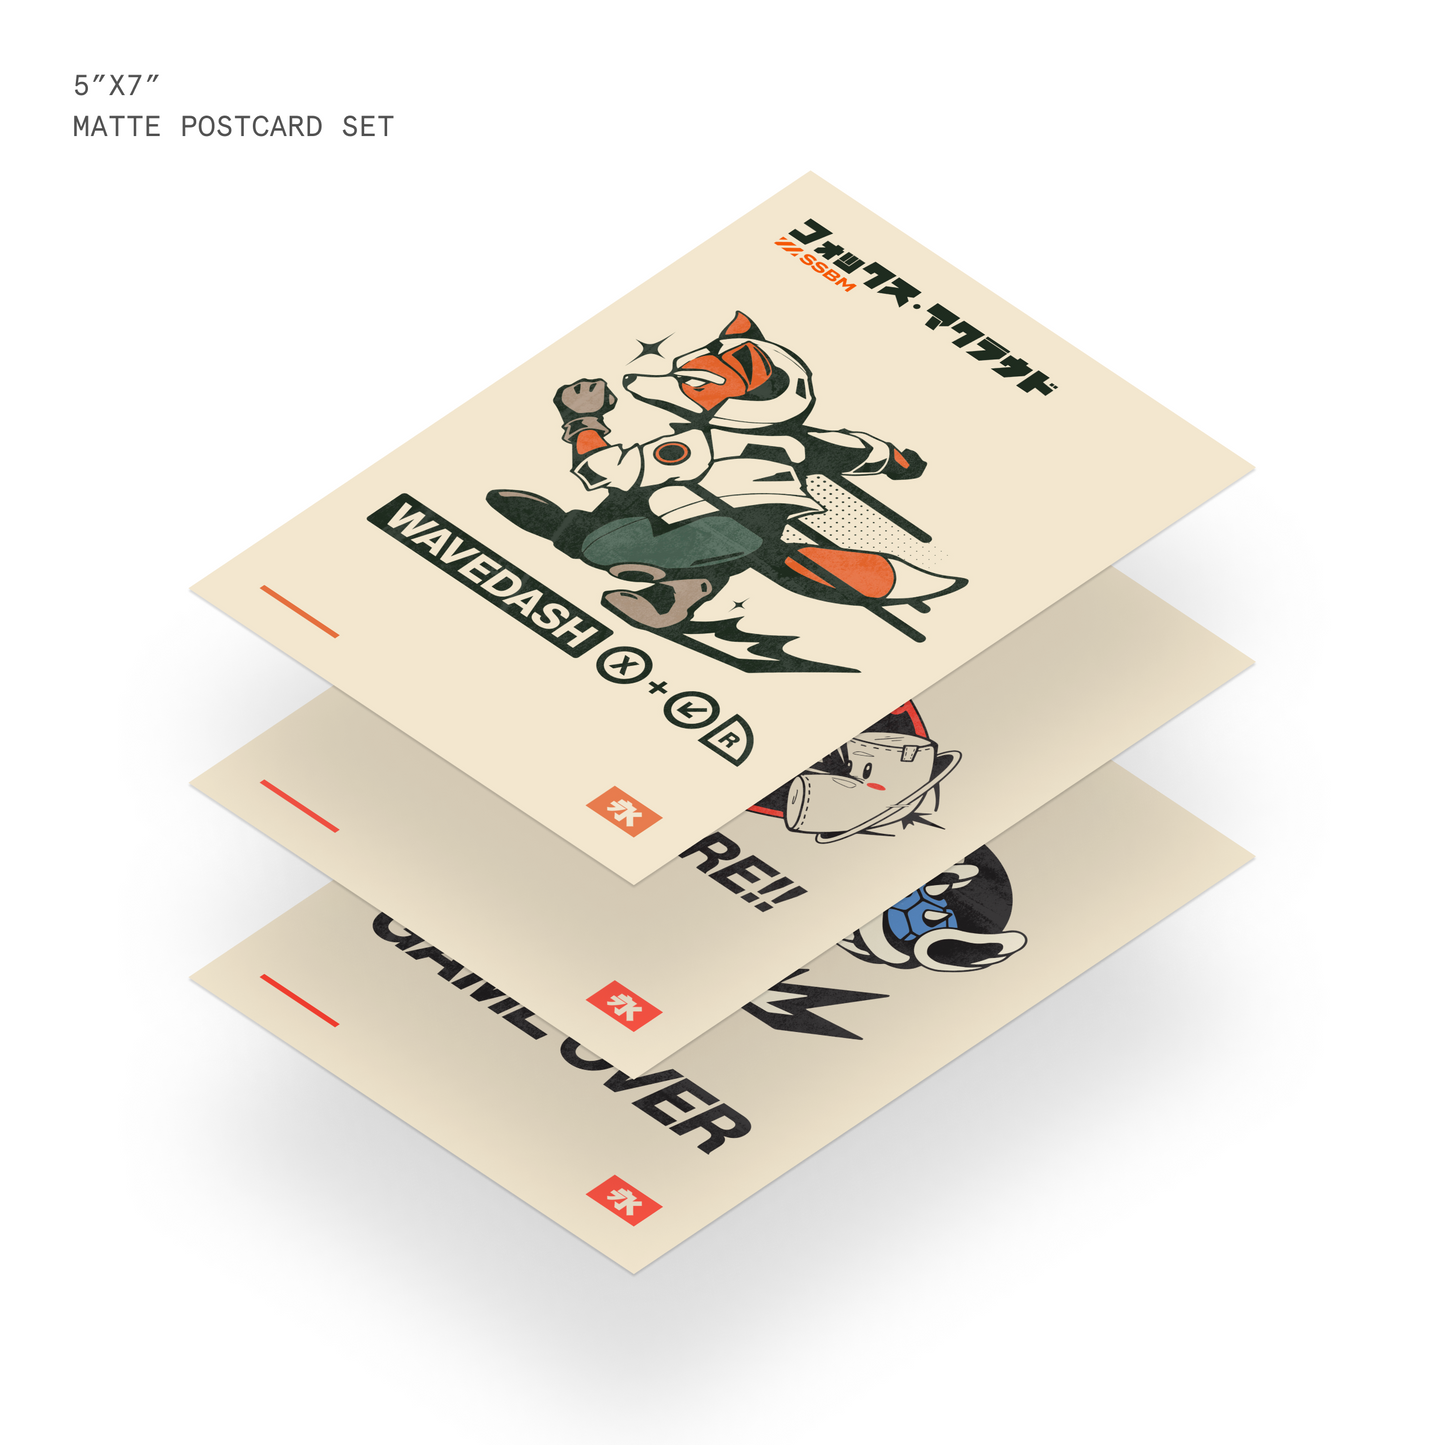 Retro Classics Postcard Set (5"x7")